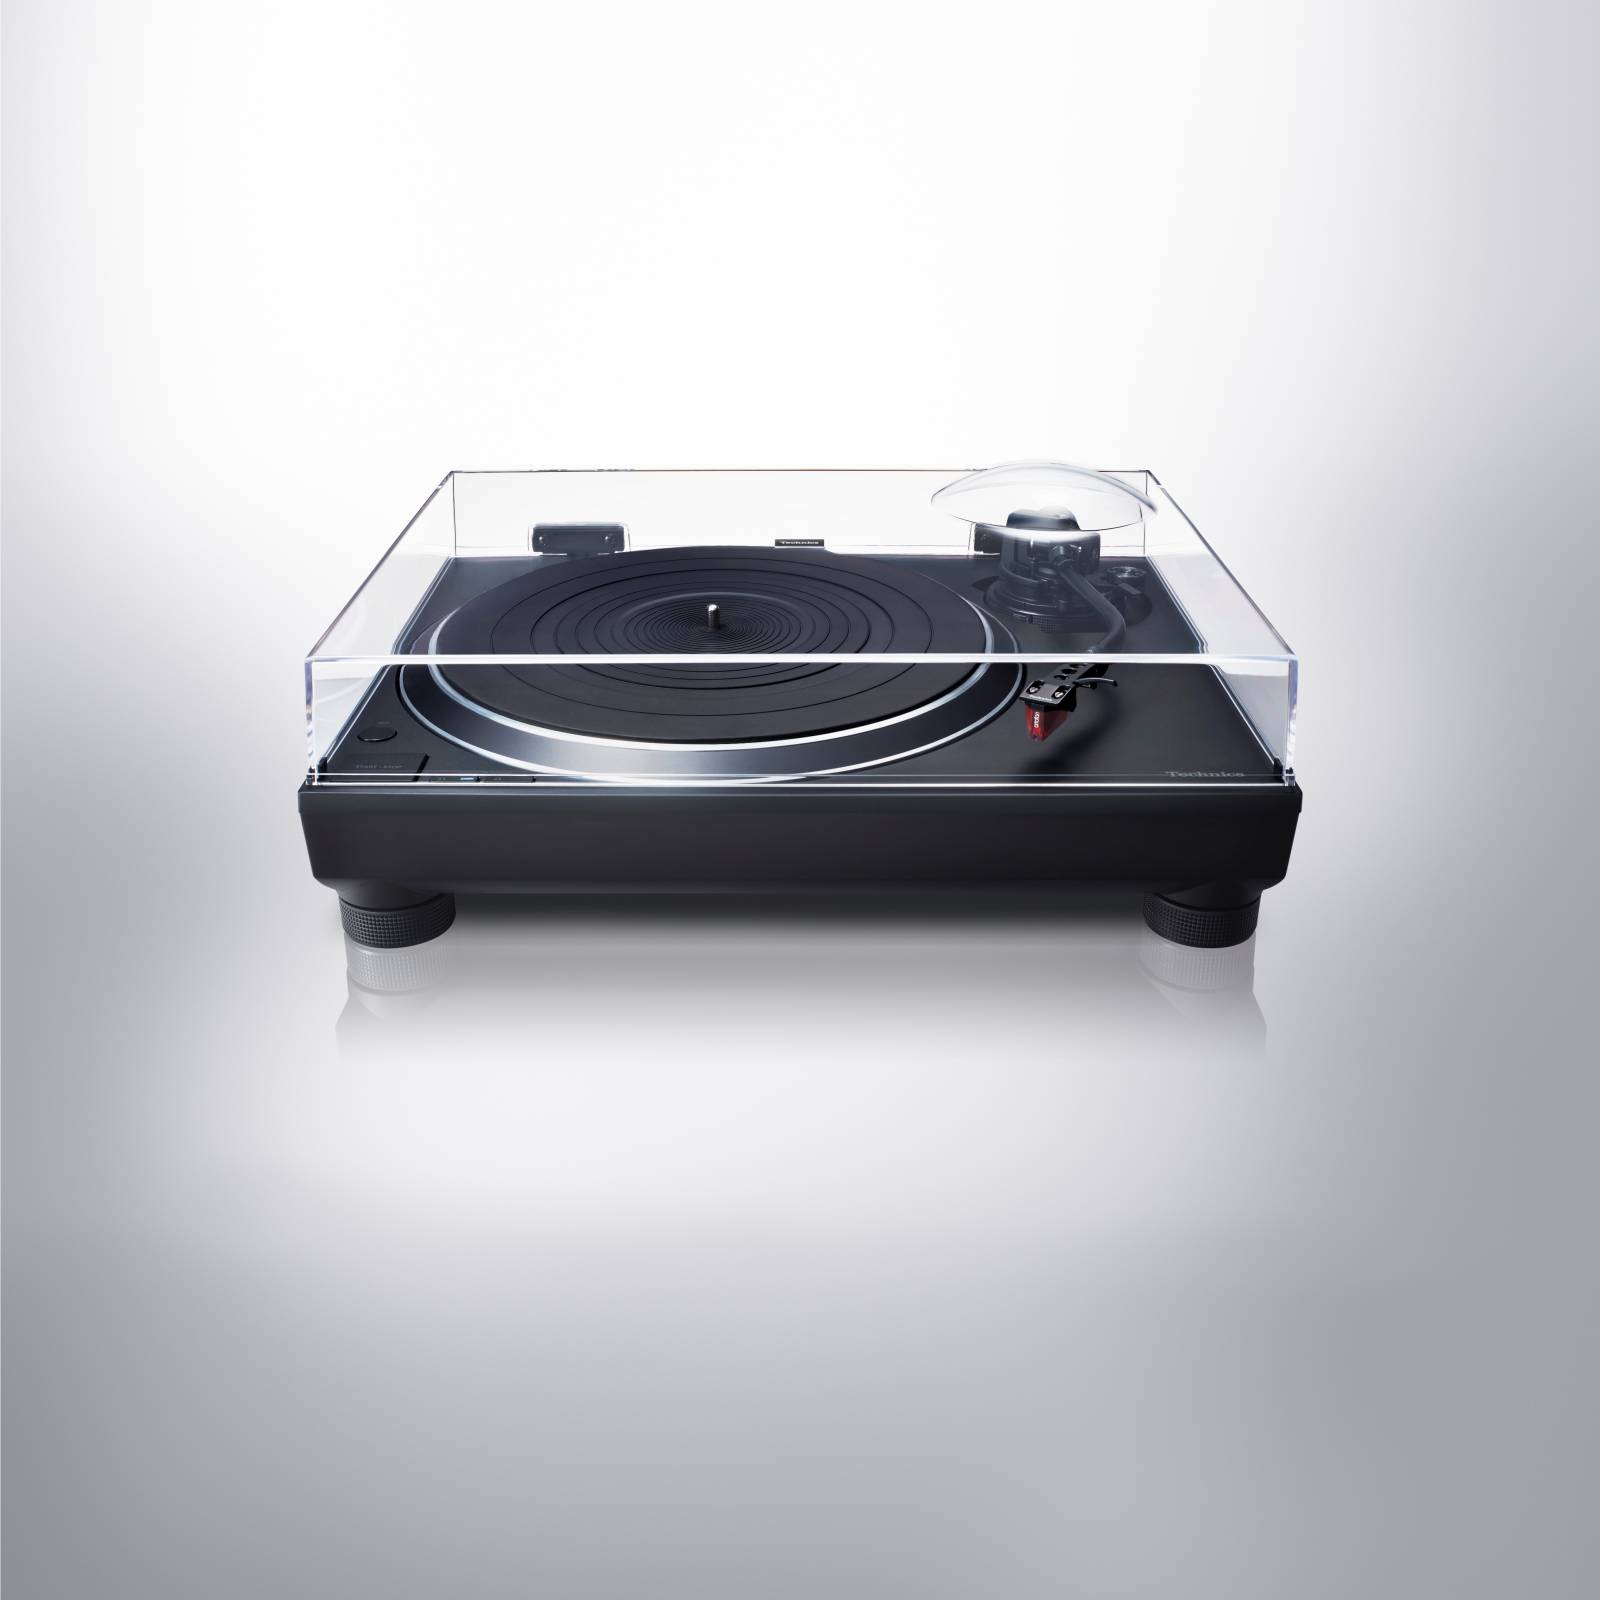 Gramofon Technics SL-1500 - Minimalistický vzhled, maximální hudební zážitek 